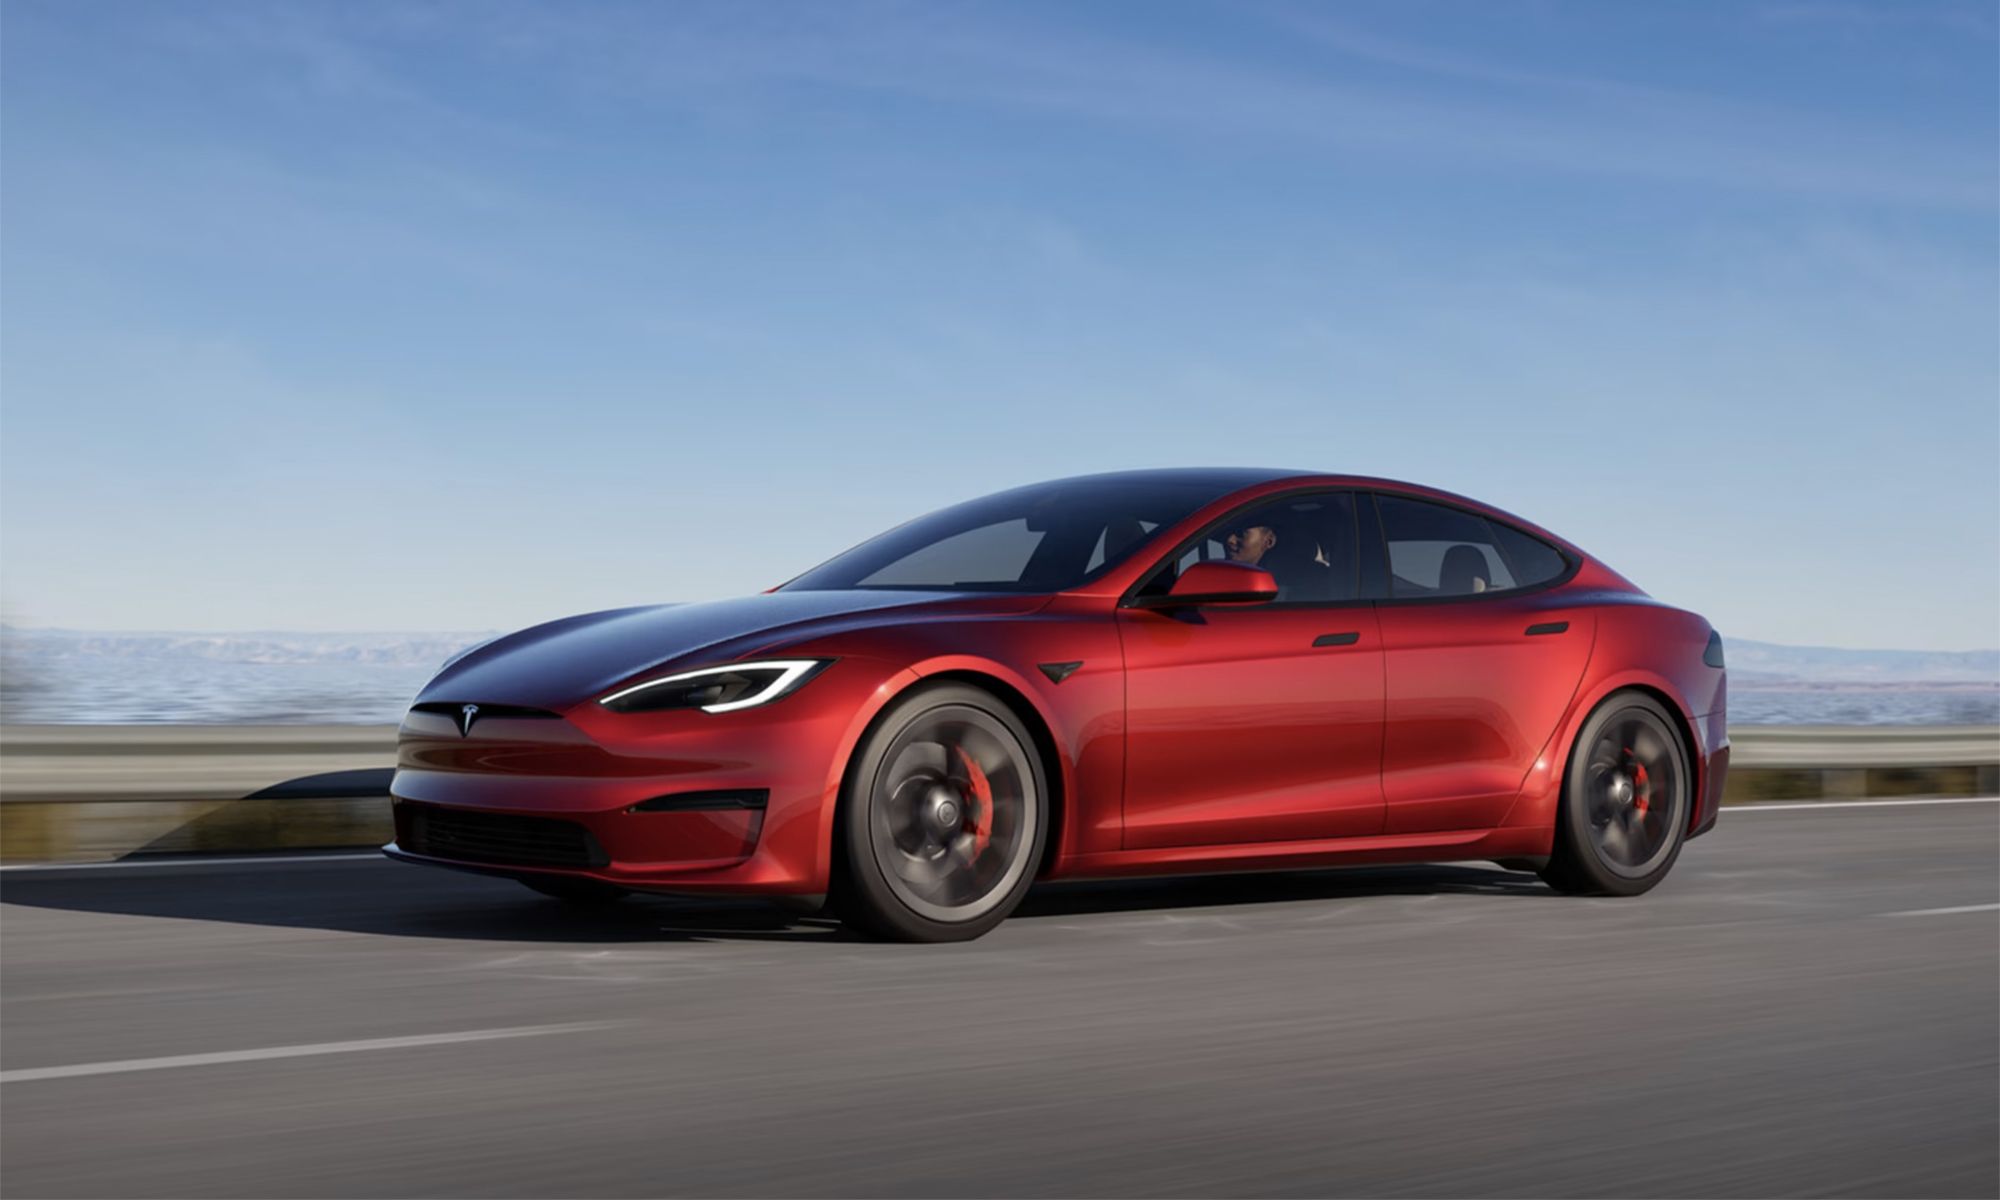 El Tesla Model S Plaid cuenta con 1.020 CV de potencia, lo que lo hace un coche excelente para largas rectas.